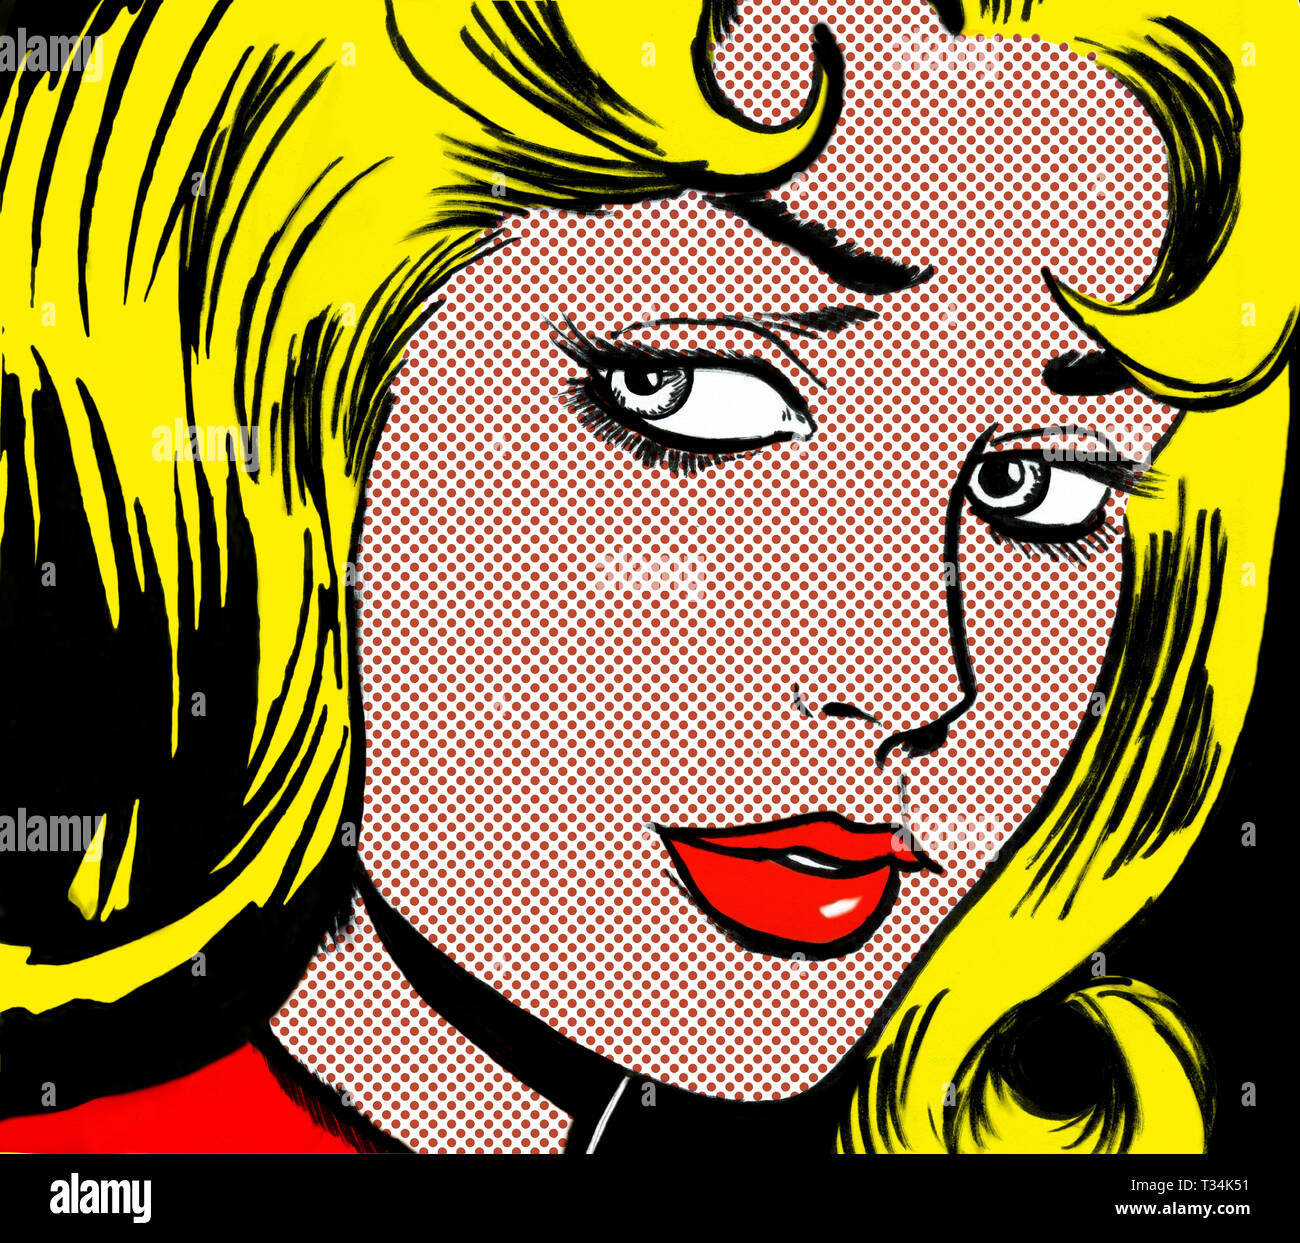 Visage fille dans le style des années 60, pop art comic books Banque D'Images